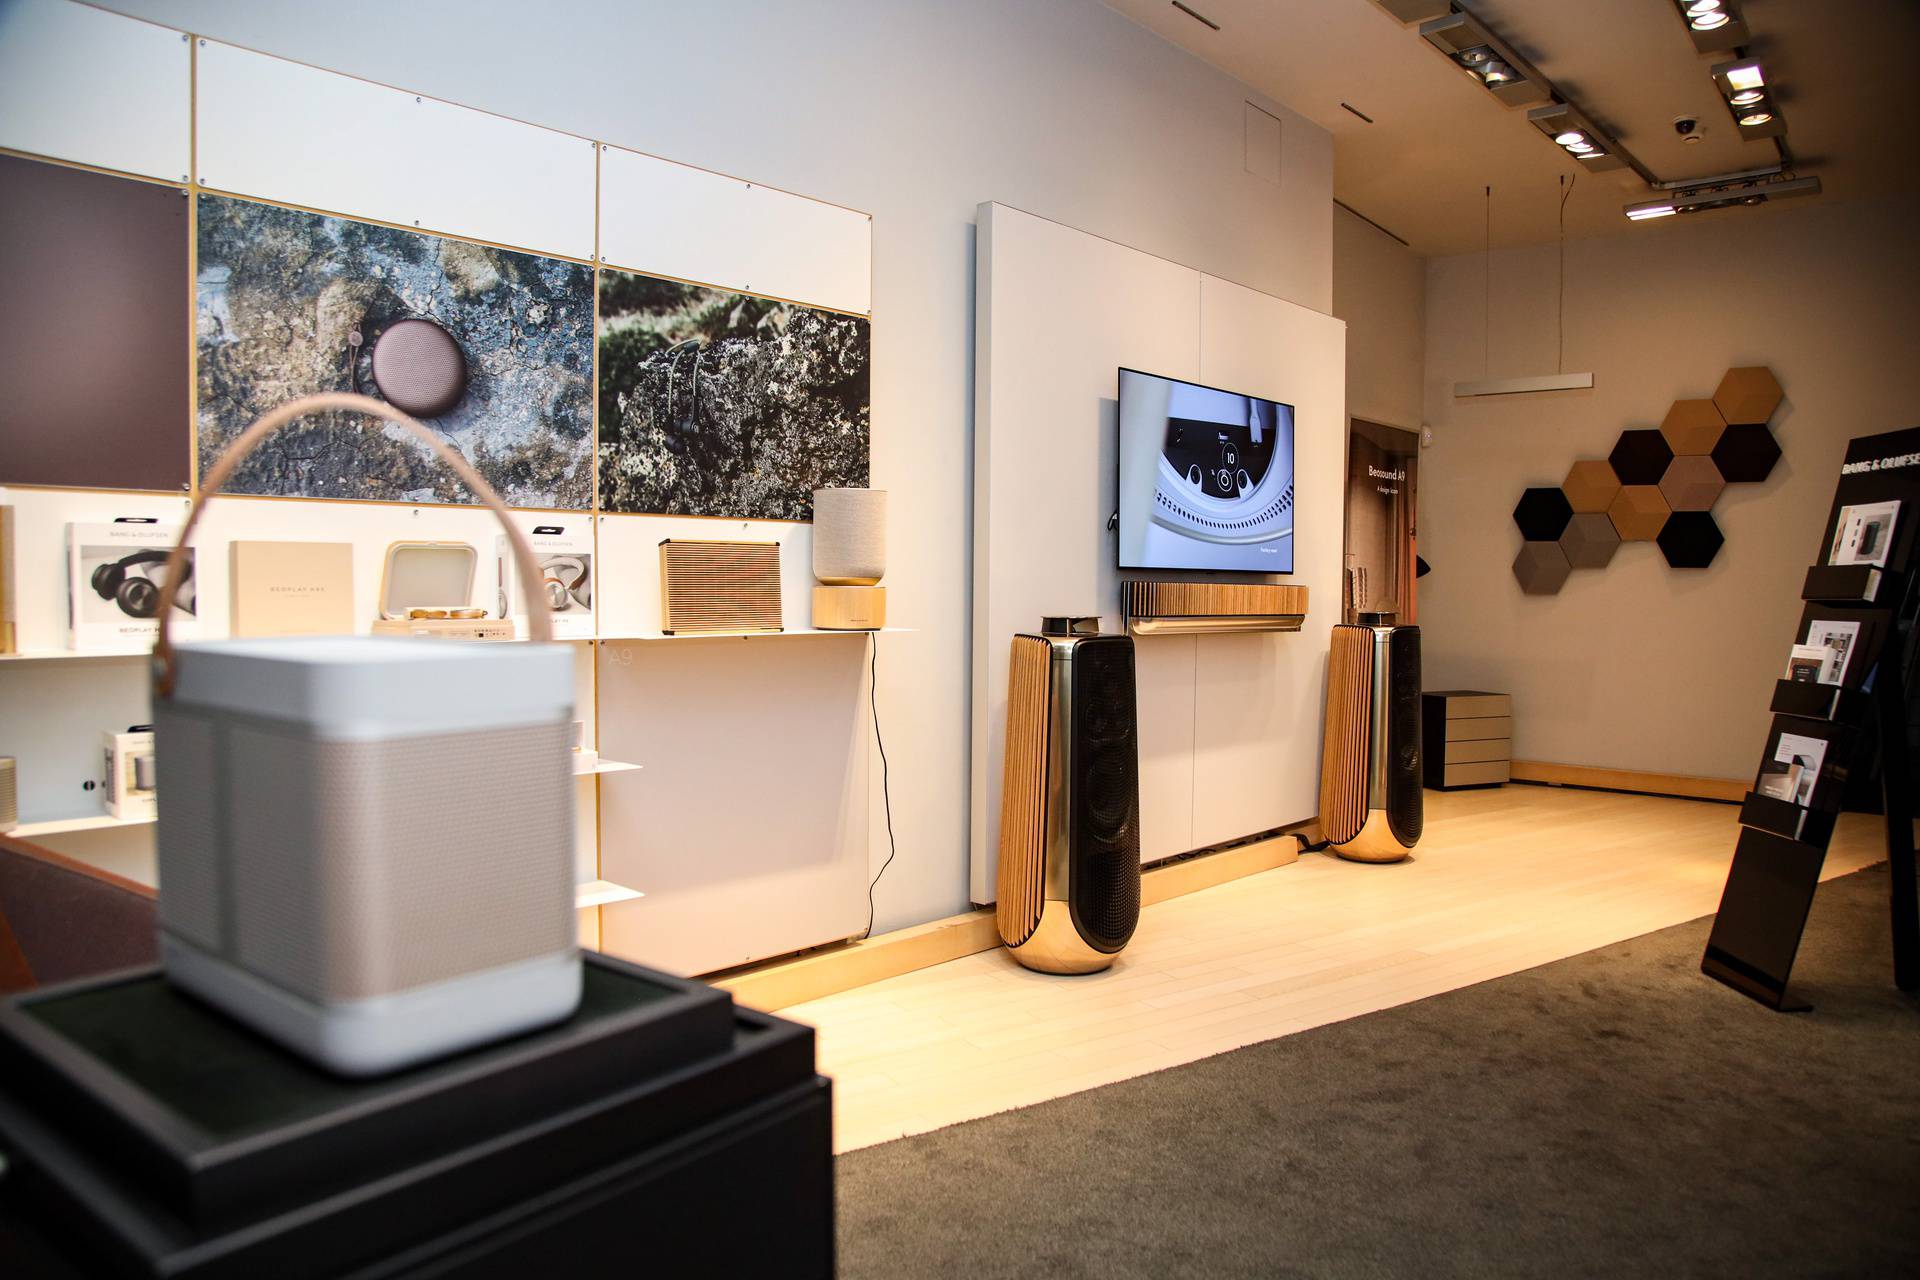 Bang & Olufsen predstavio nove premium zvučnike i okupio brojna poznata lica